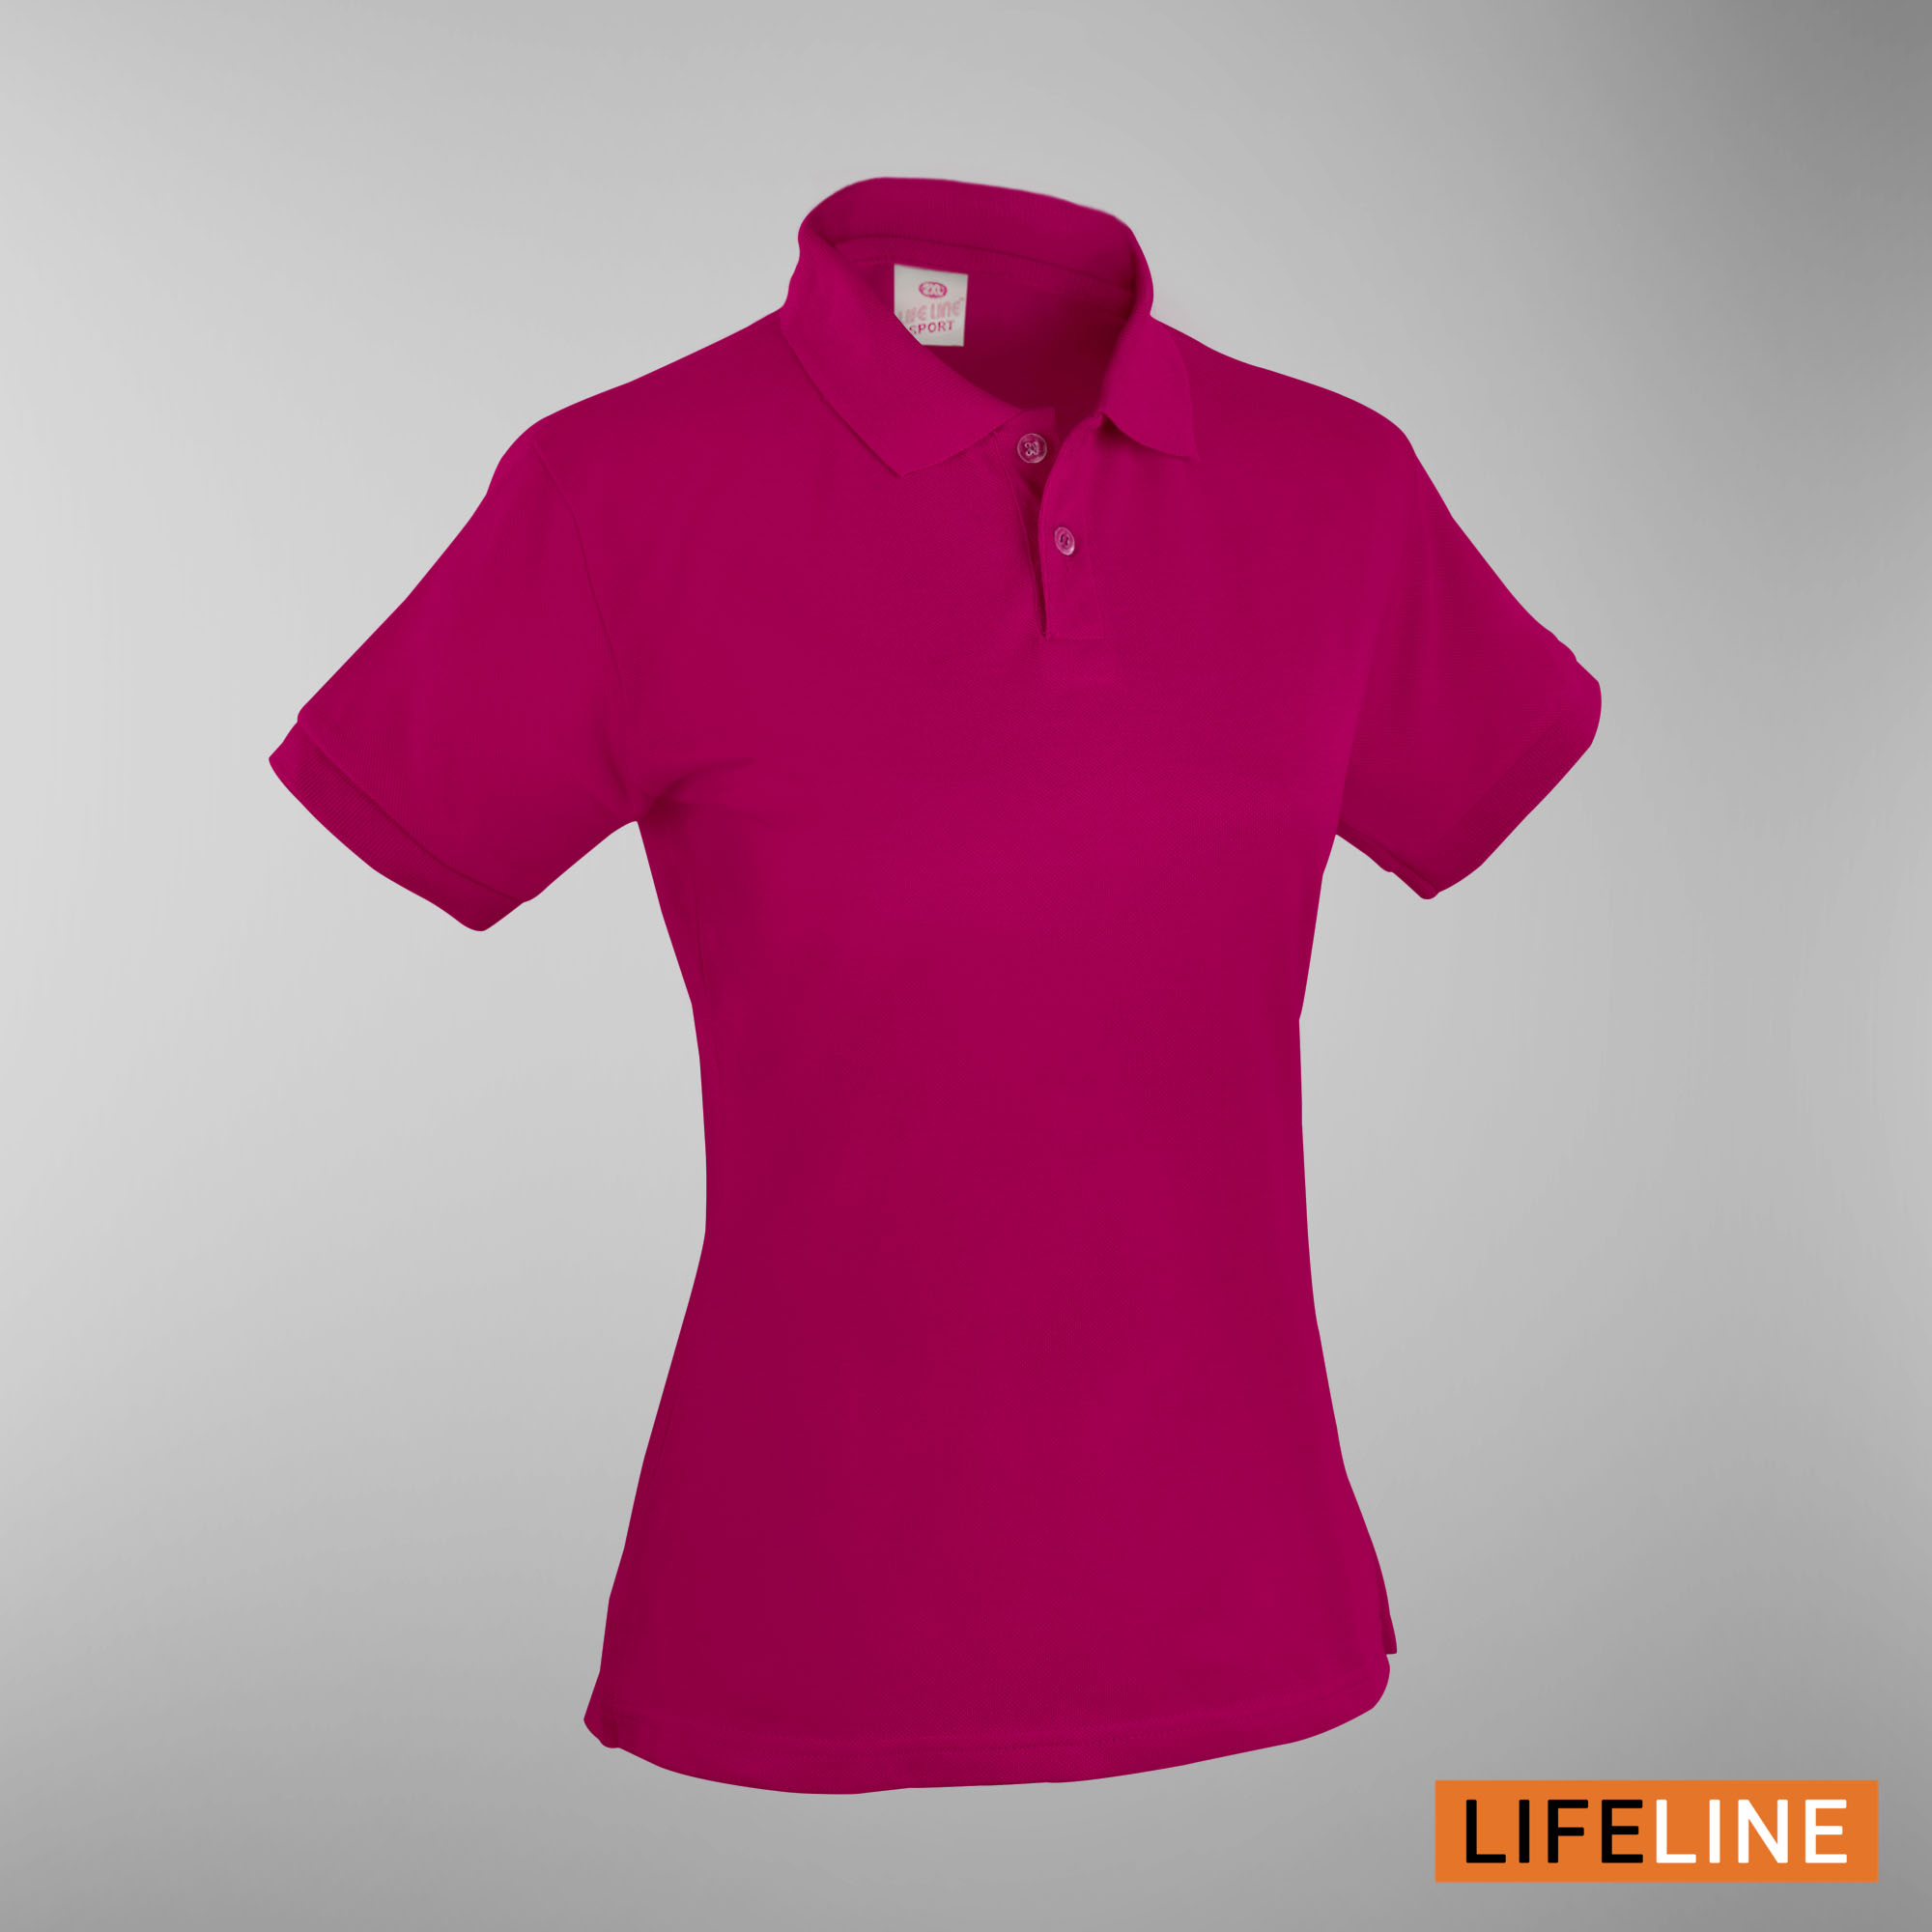 Lifeline Ladies’ Poloshirt (Fuschia) (Petite Sizes)